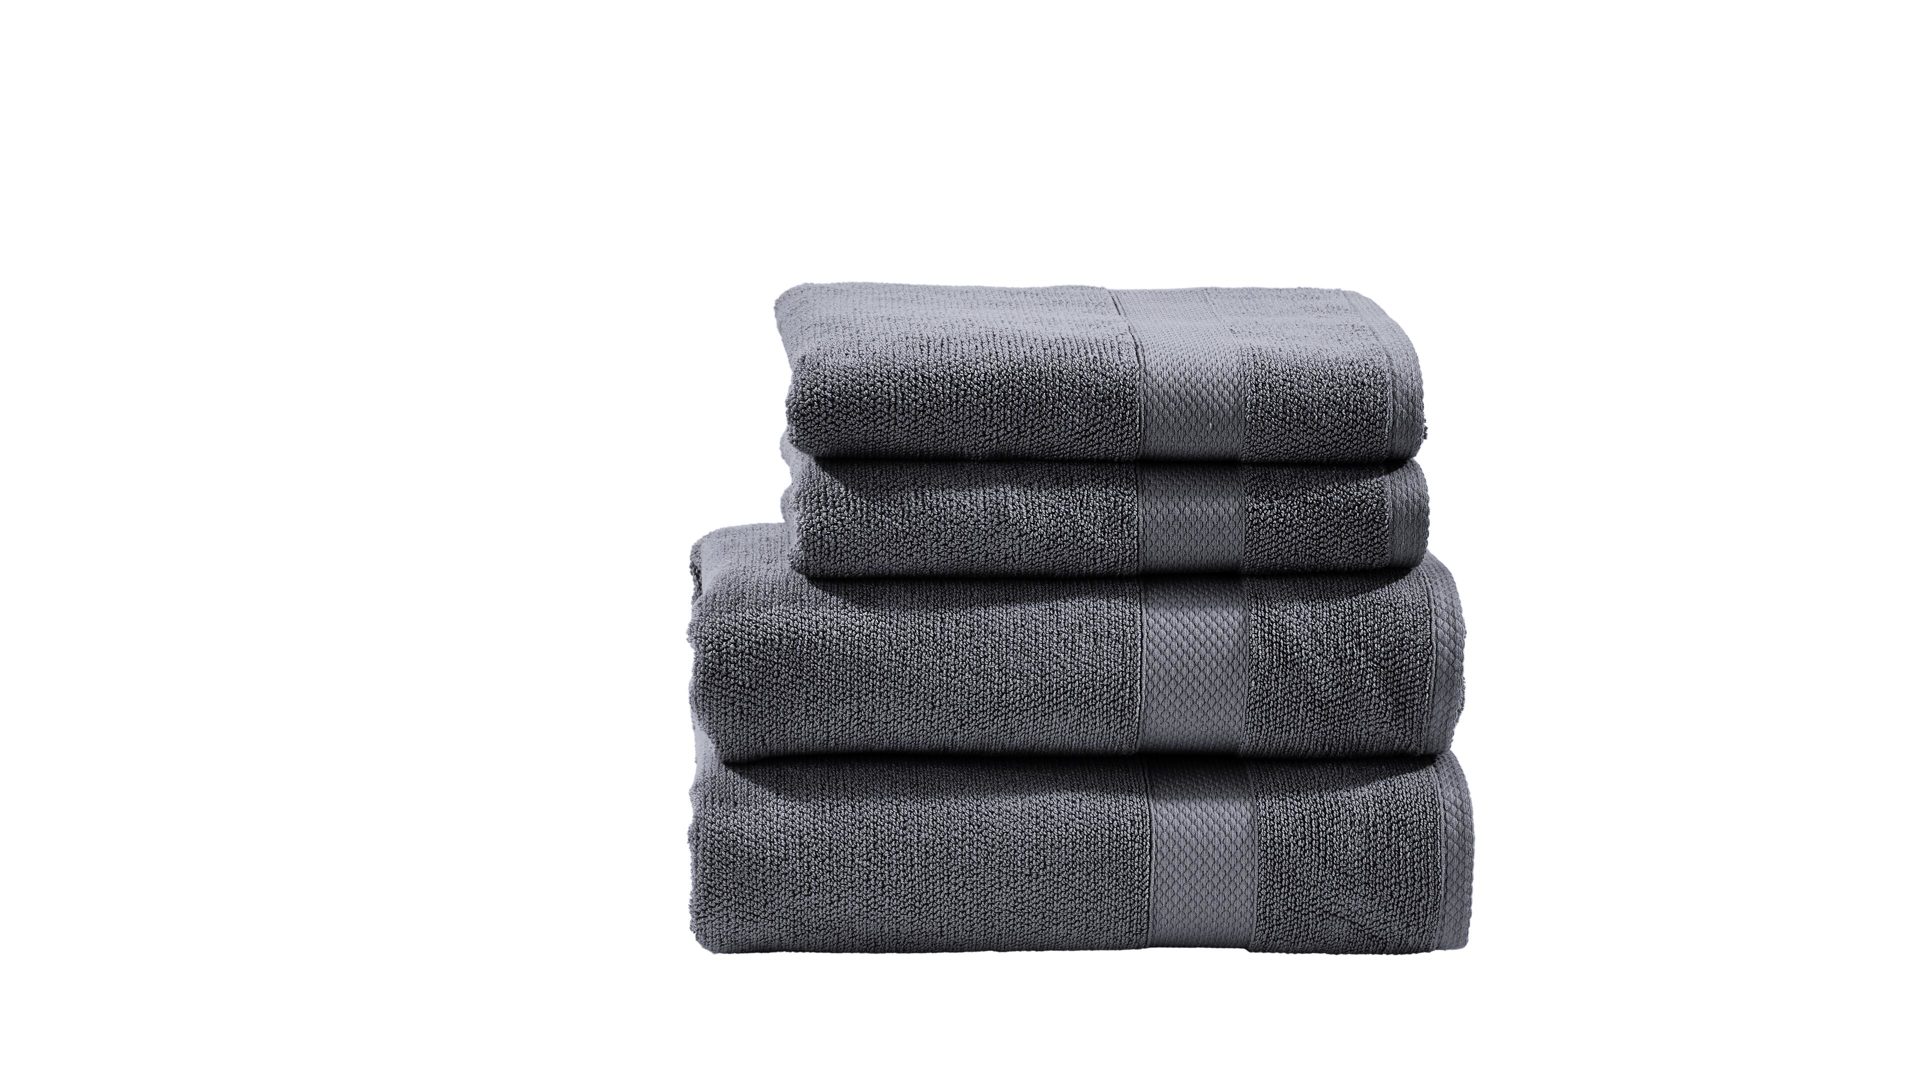 Handtuch-Set Done® be different aus Stoff in Anthrazit DONE® Handtuch-Set Deluxe anthrazitfarbene Baumwolle – vierteilig